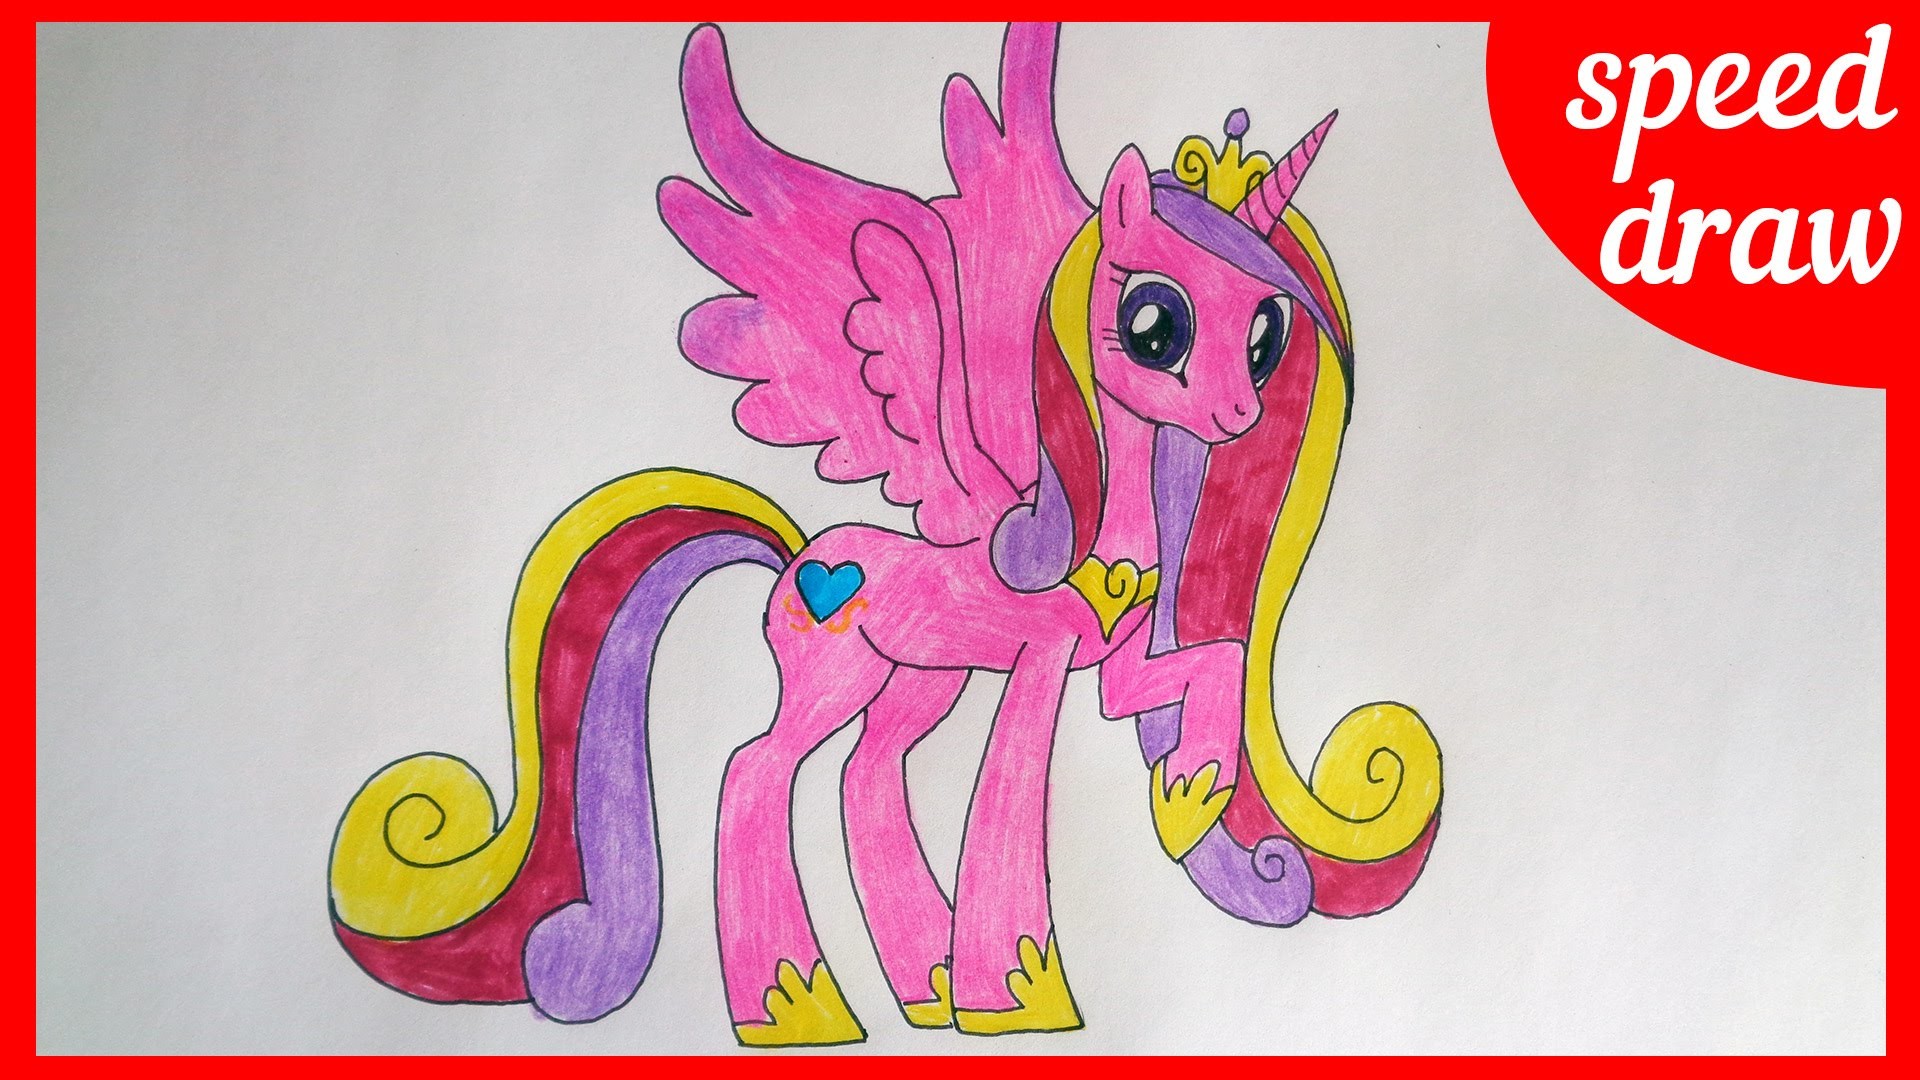 1920x1080 Speed draw Princess Cadance, my little pony